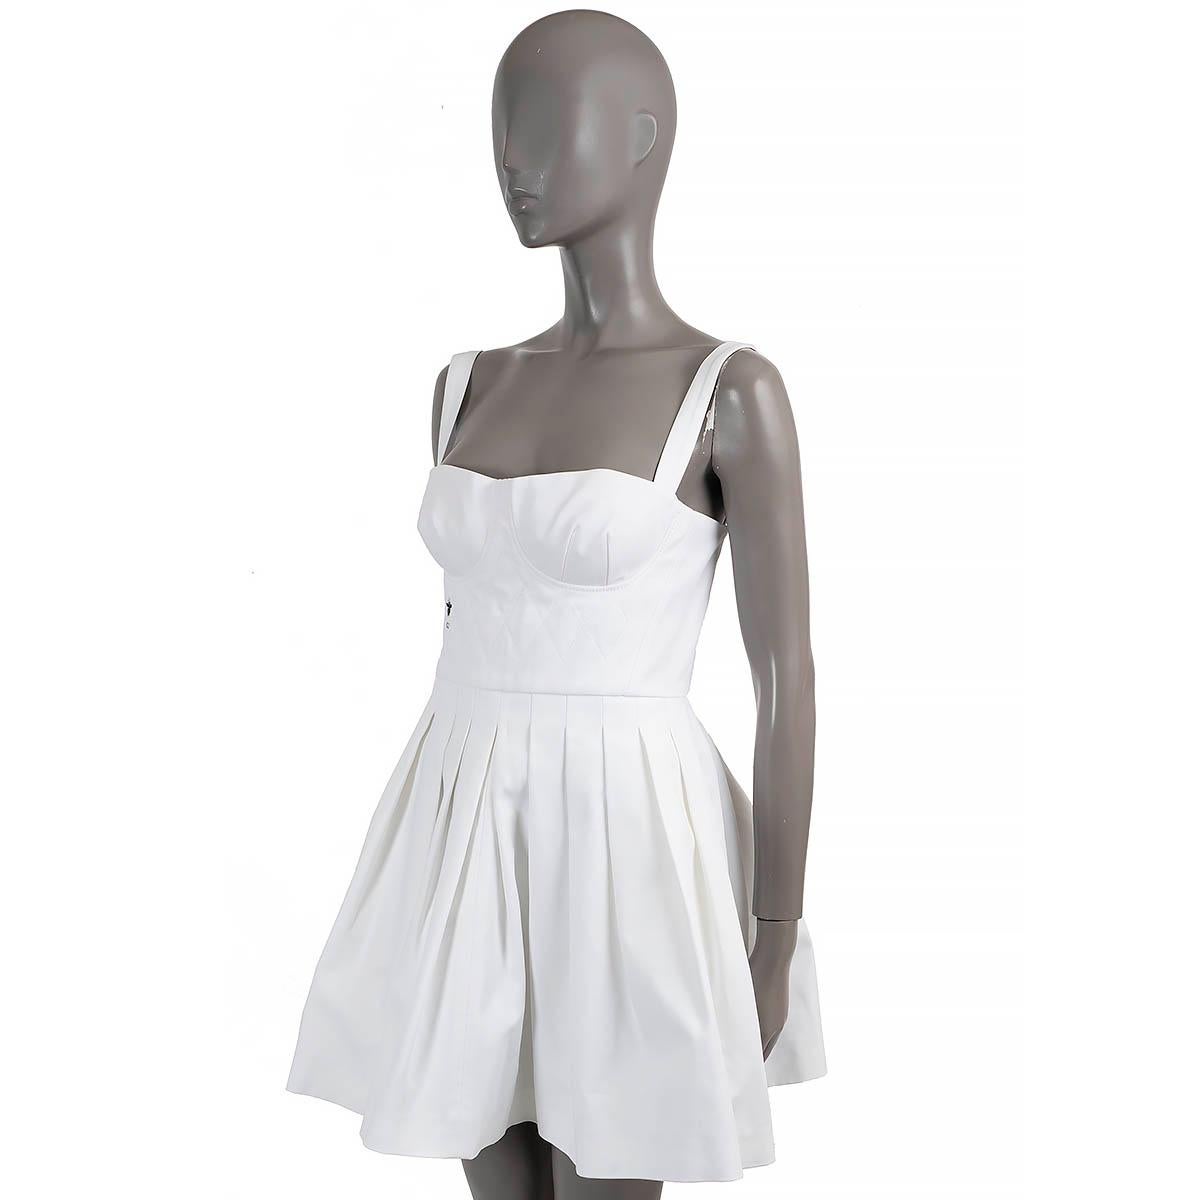 100% authentique Christian Dior Mini robe bustier sans manches en coton blanc (100%). Comprend un haut bustier matelassé avec broderie CD Bee en noir et une jupe plissée. Il s'ouvre par une fermeture à glissière dissimulée dans le dos et n'est pas